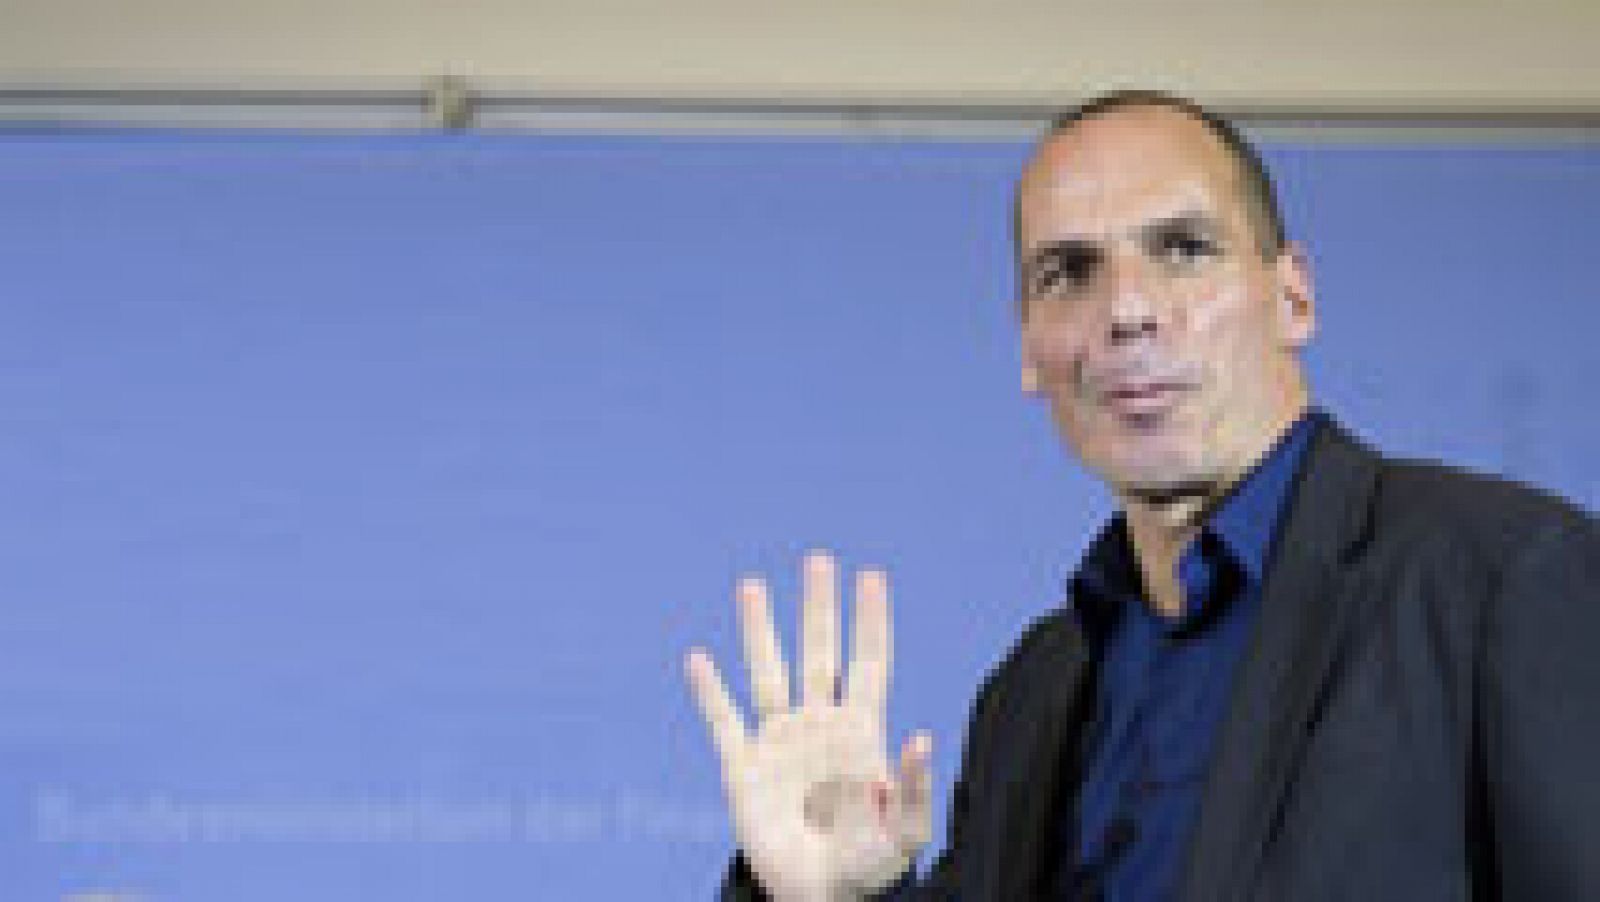 Grecia pide a Bruselas un "programa puente" de seis meses hasta solucionar el problema de la deuda